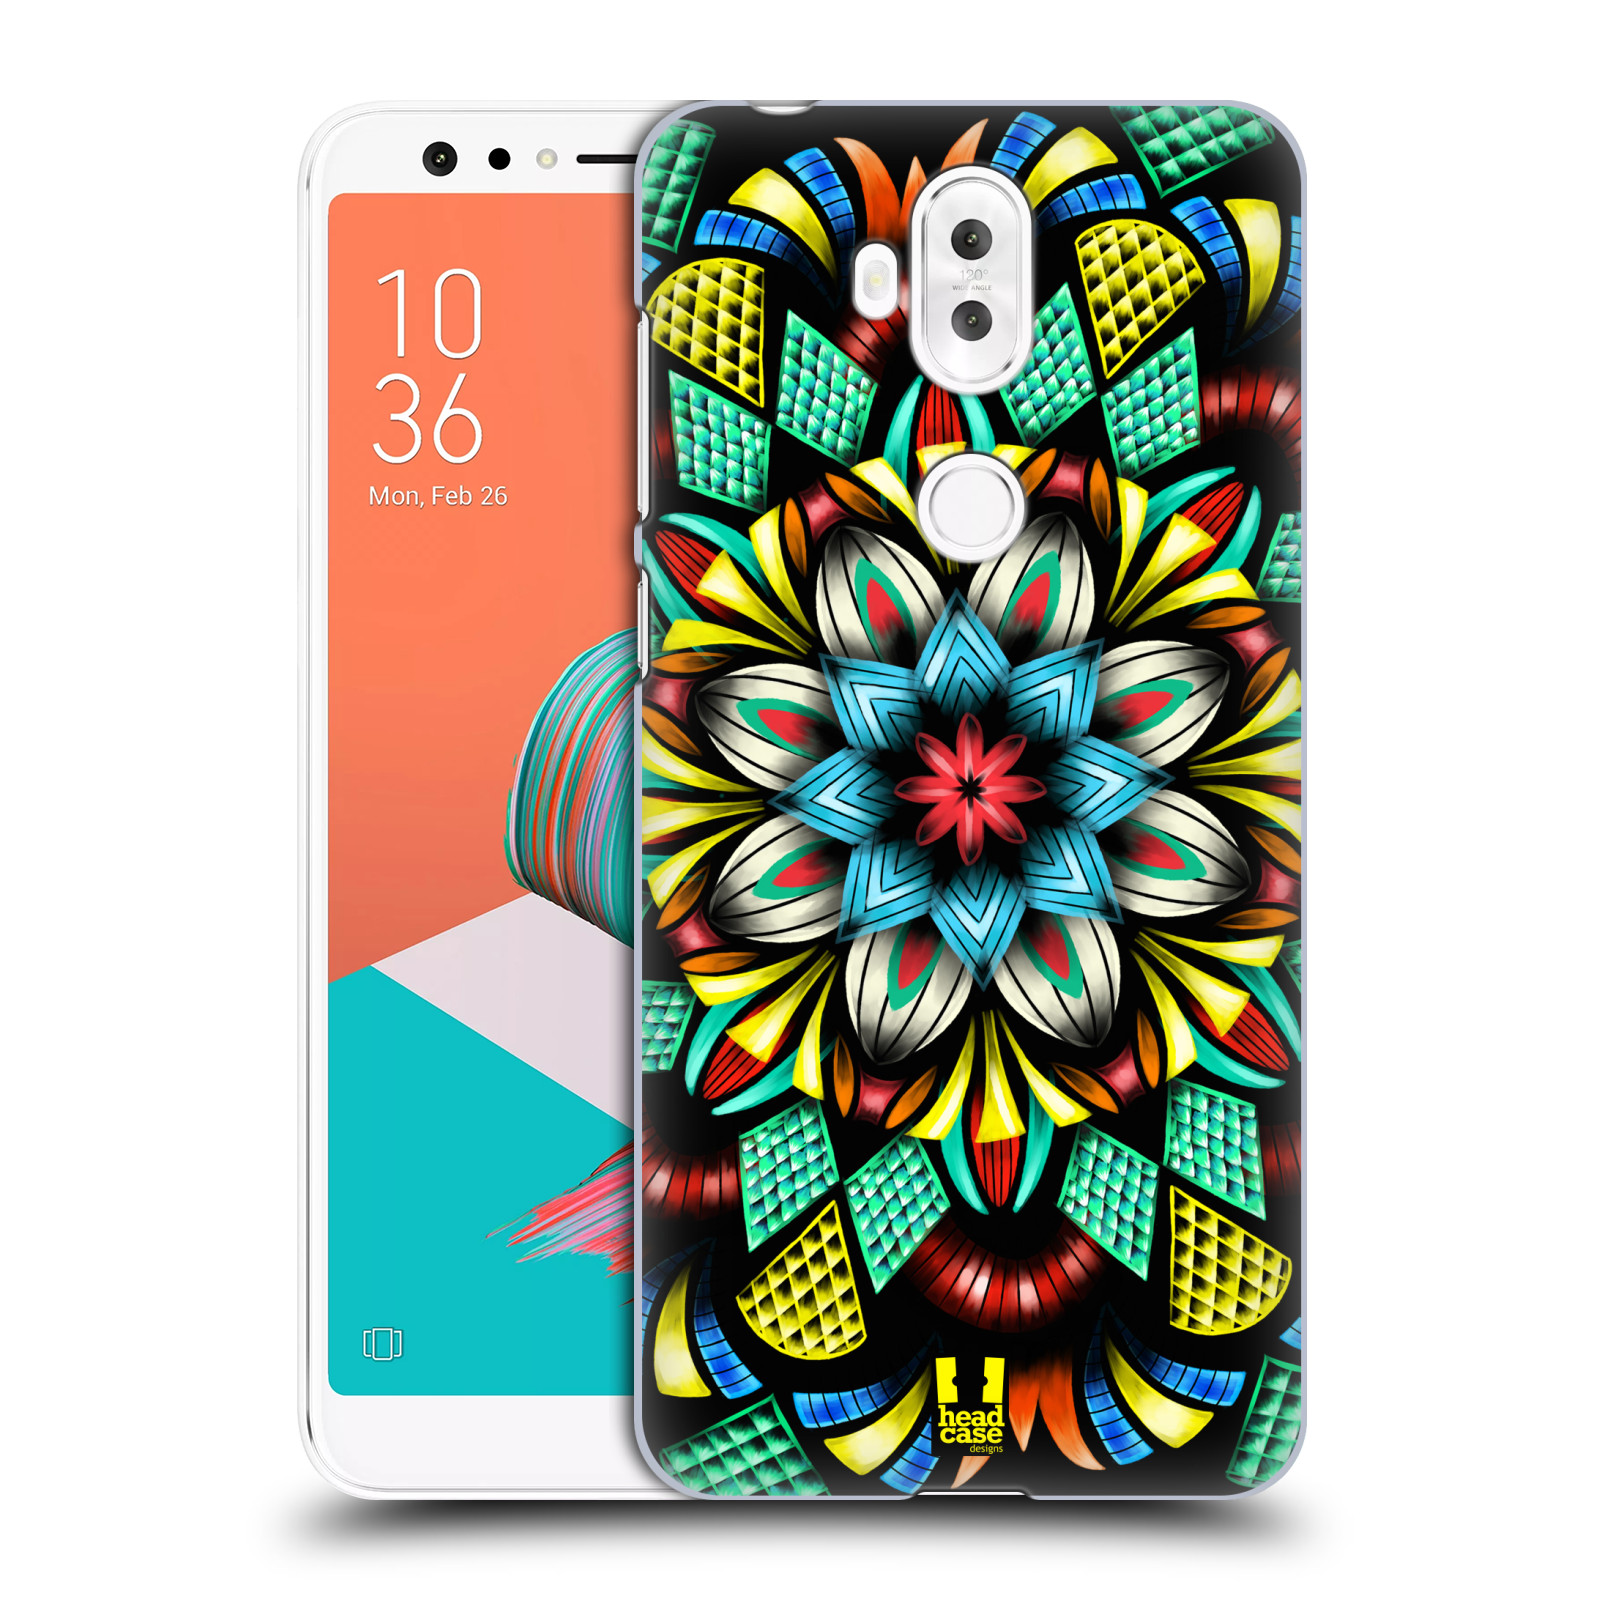 HEAD CASE plastový obal na mobil Asus Zenfone 5 LITE ZC600KL vzor Indie Mandala kaleidoskop barevný vzor TRADIČNÍ